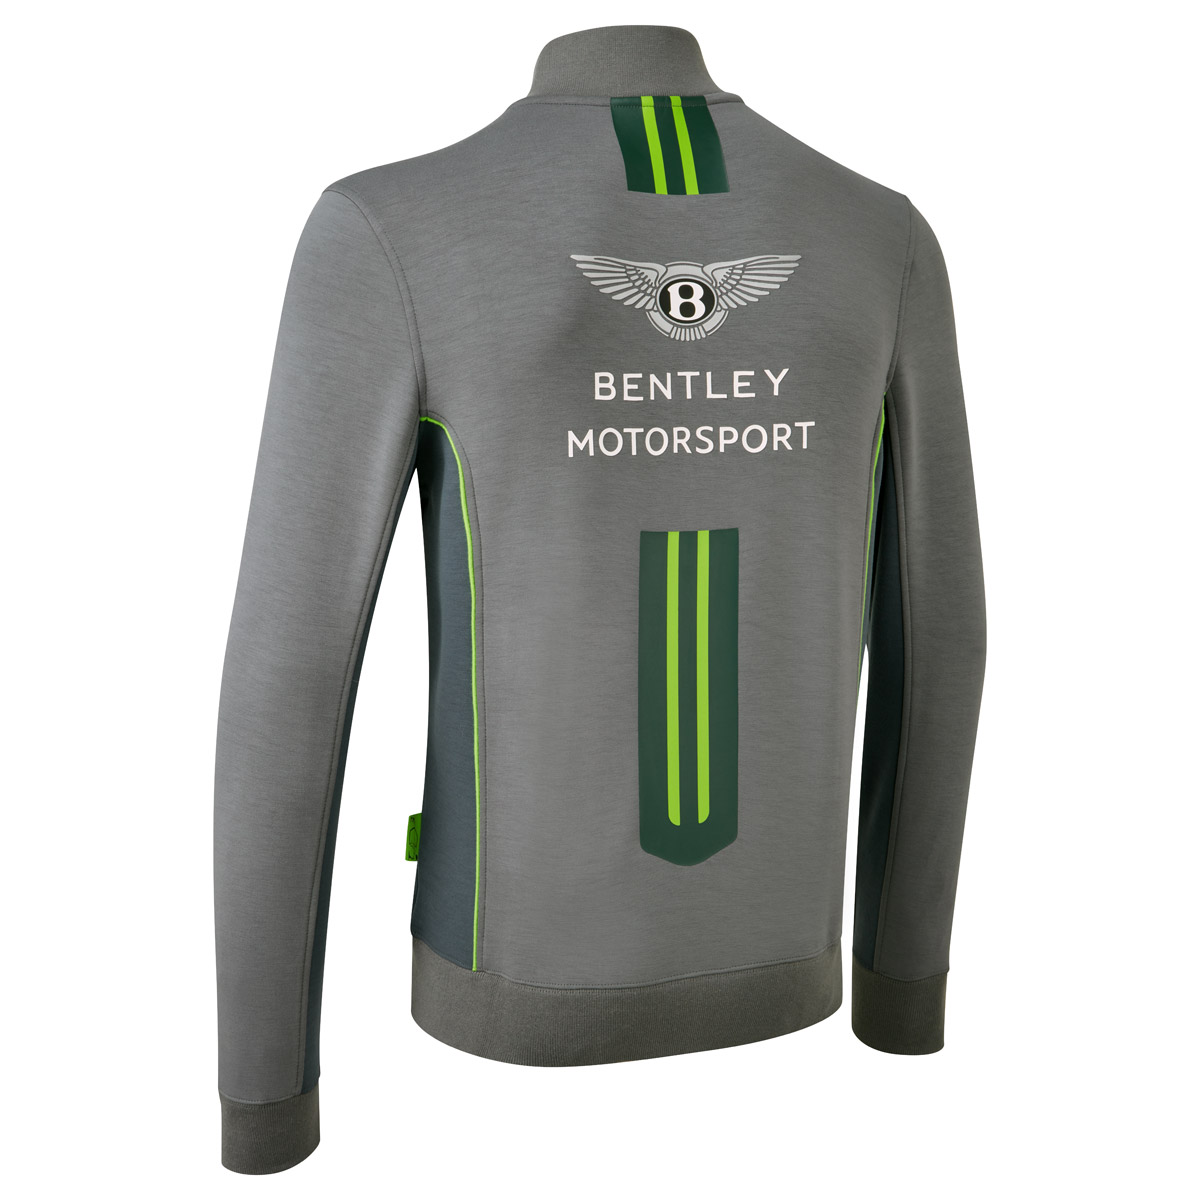 Bentley Motorsport sweatjacket "Team" - grey